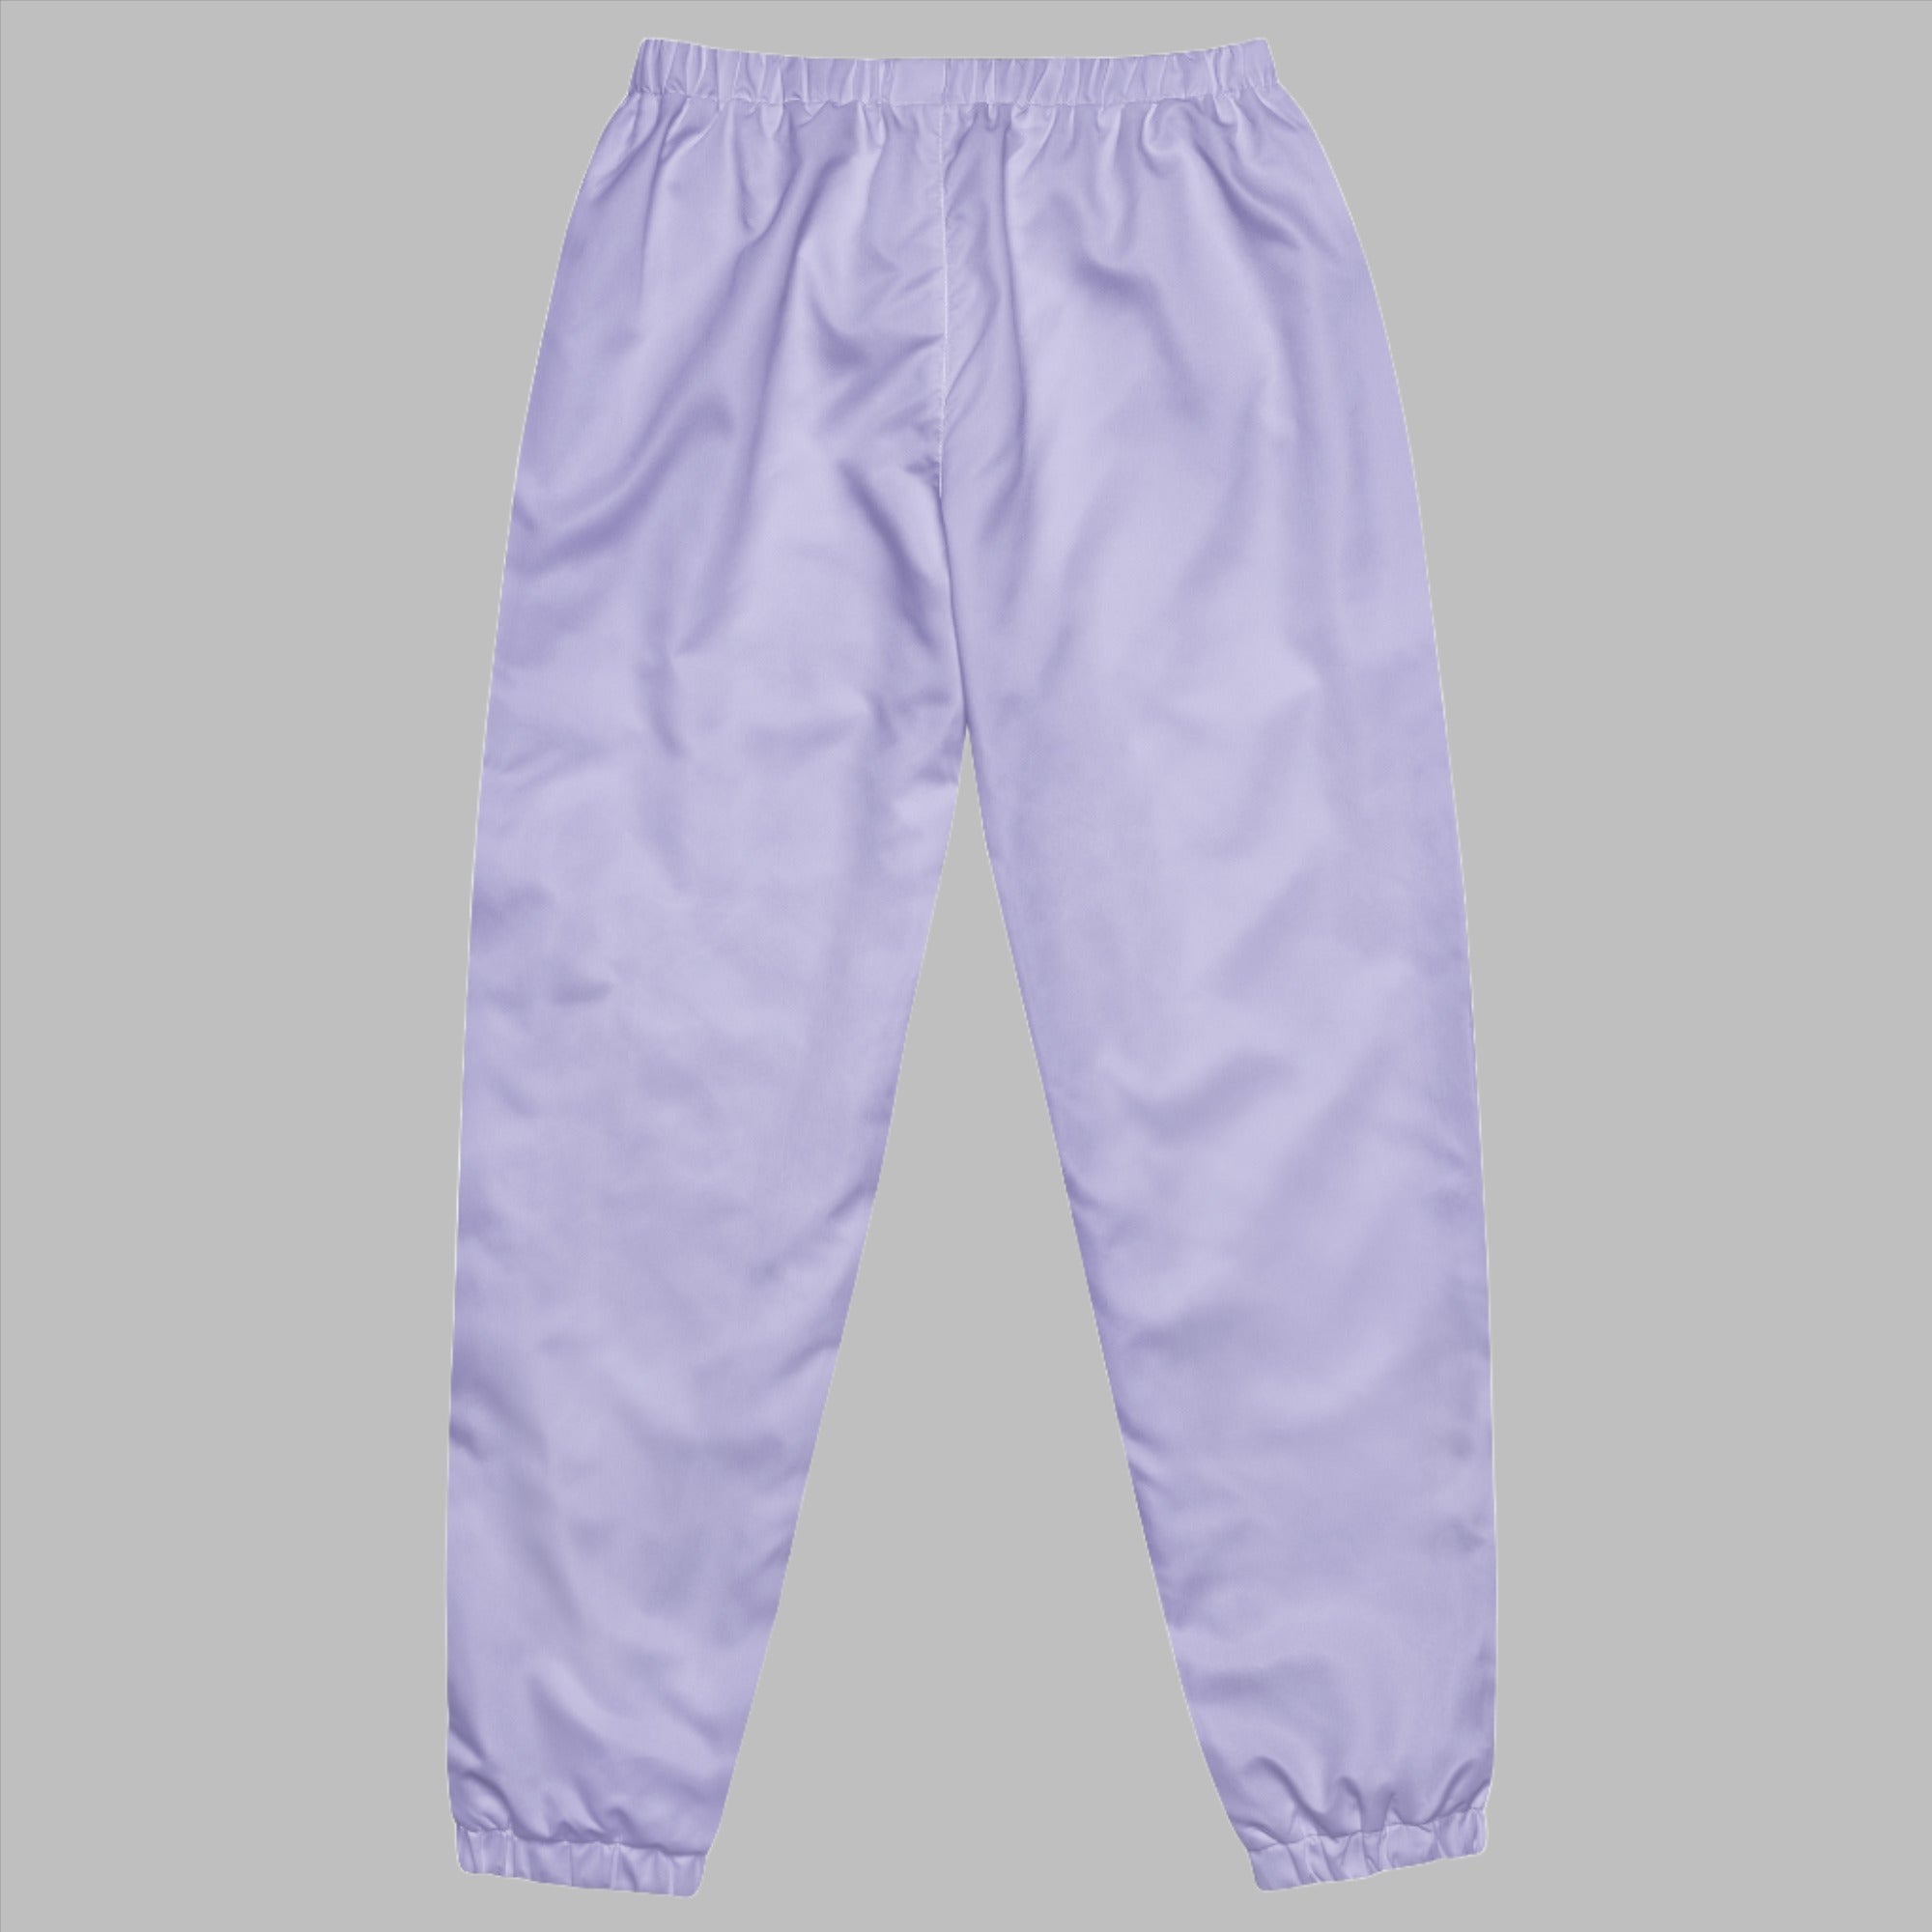 all-over-print-unisex-track-pants-white-back-66299bf43bf1d.jpg